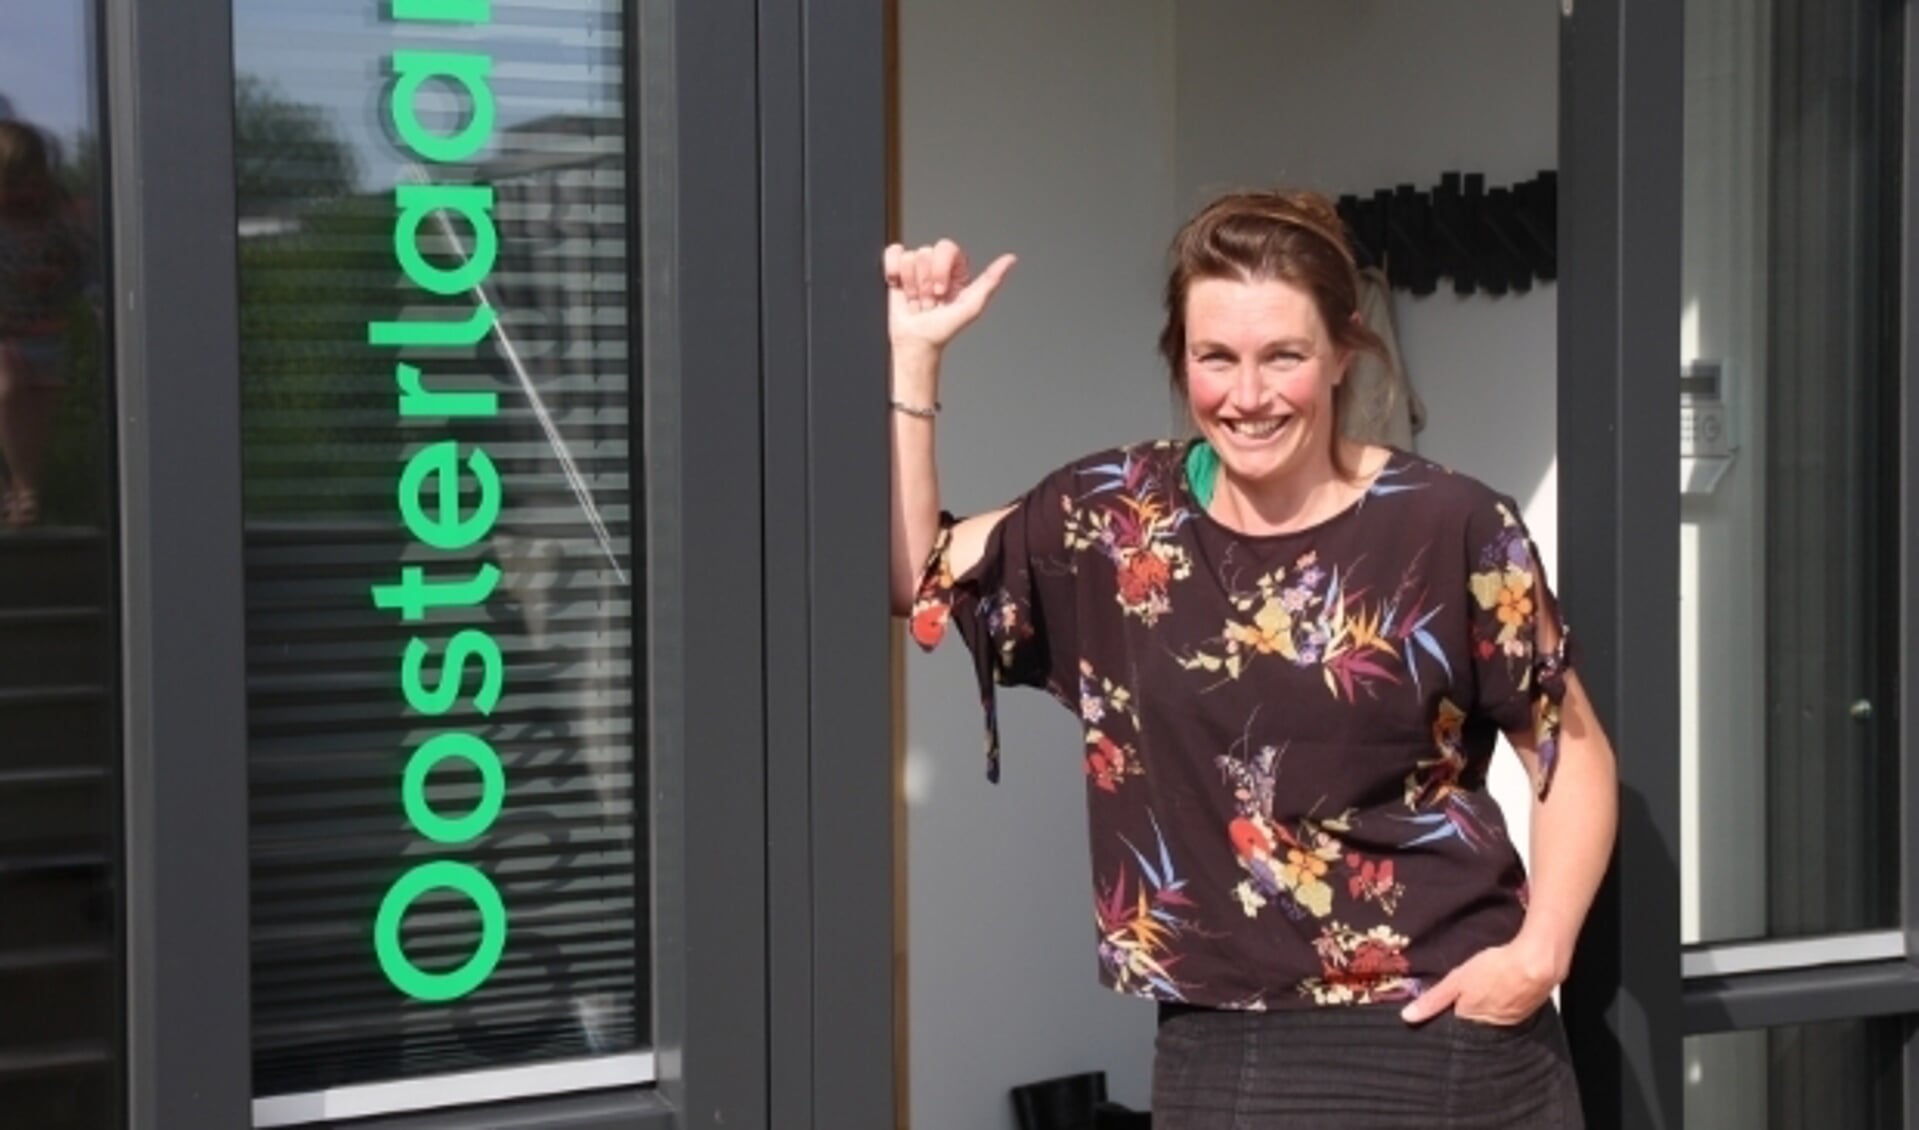 Minke Oosterlaan bij haar fraaie duurzame kantoor waar ze met haar team heel prettig werkt. 